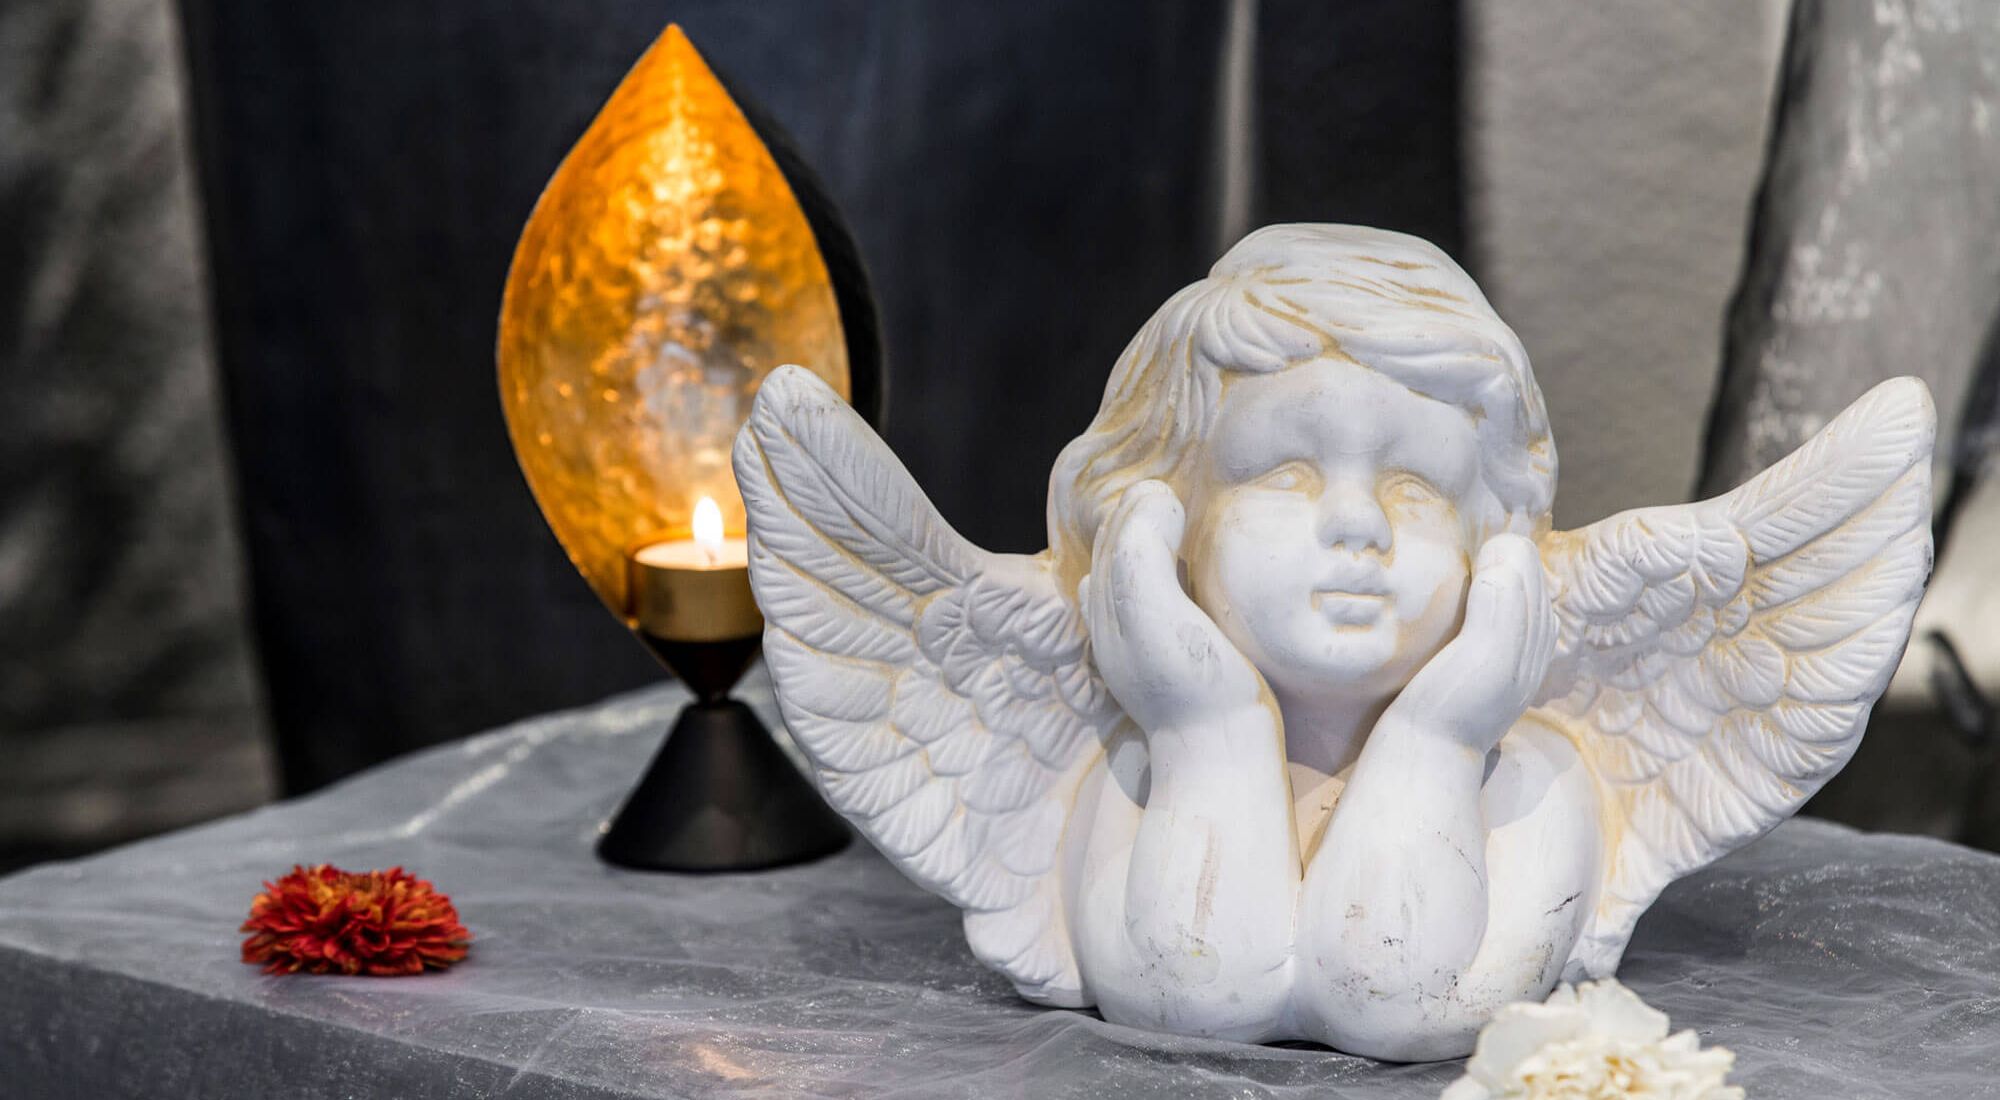 Brennendes Teelicht und ein weißer Engel auf einem Tisch